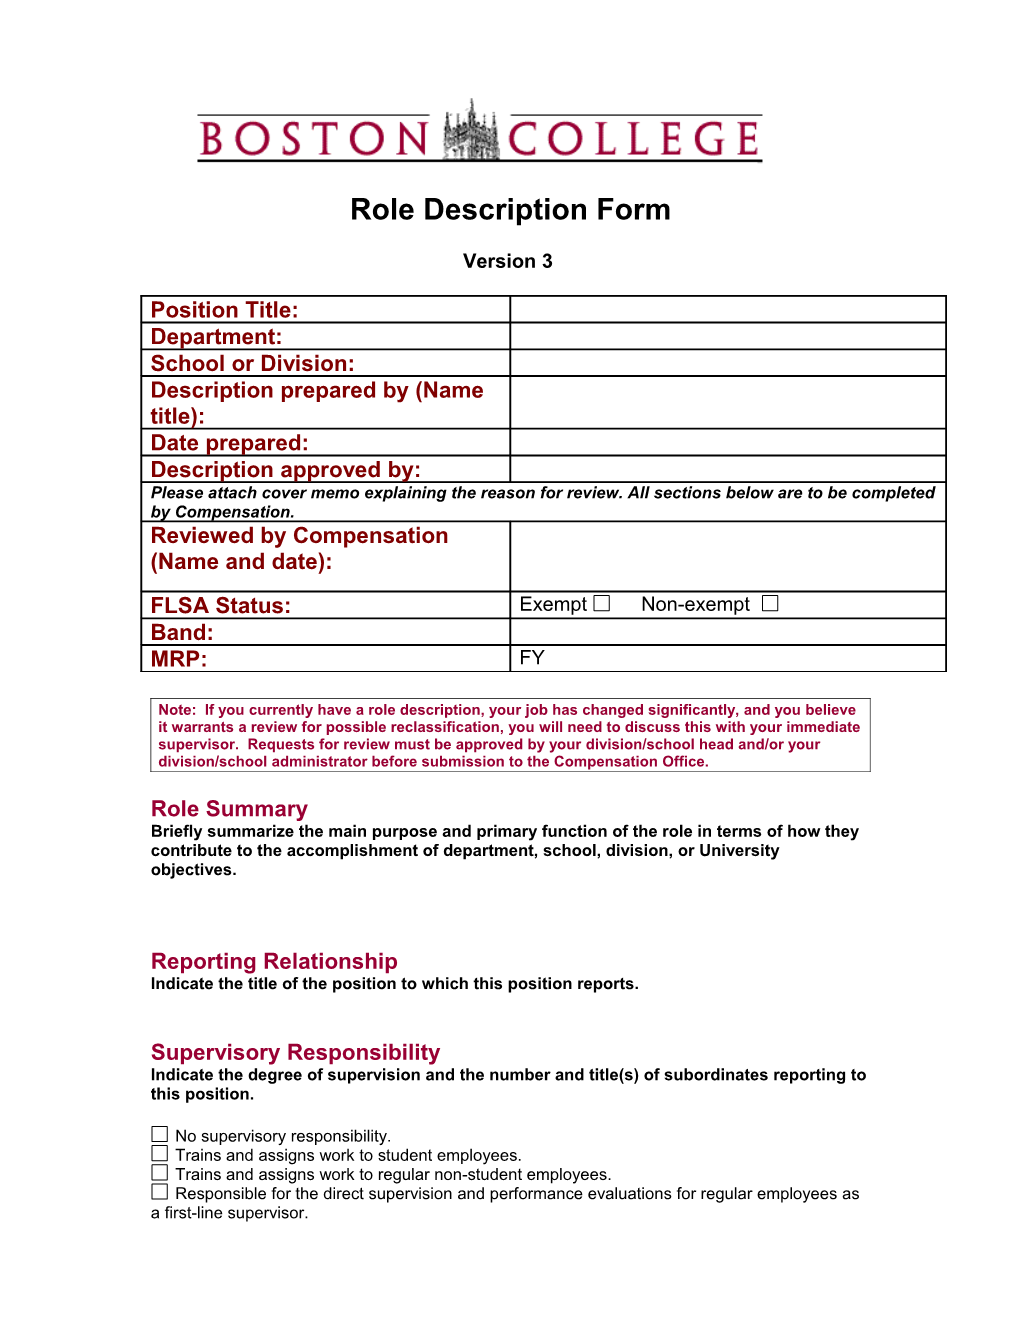 Role Description Form